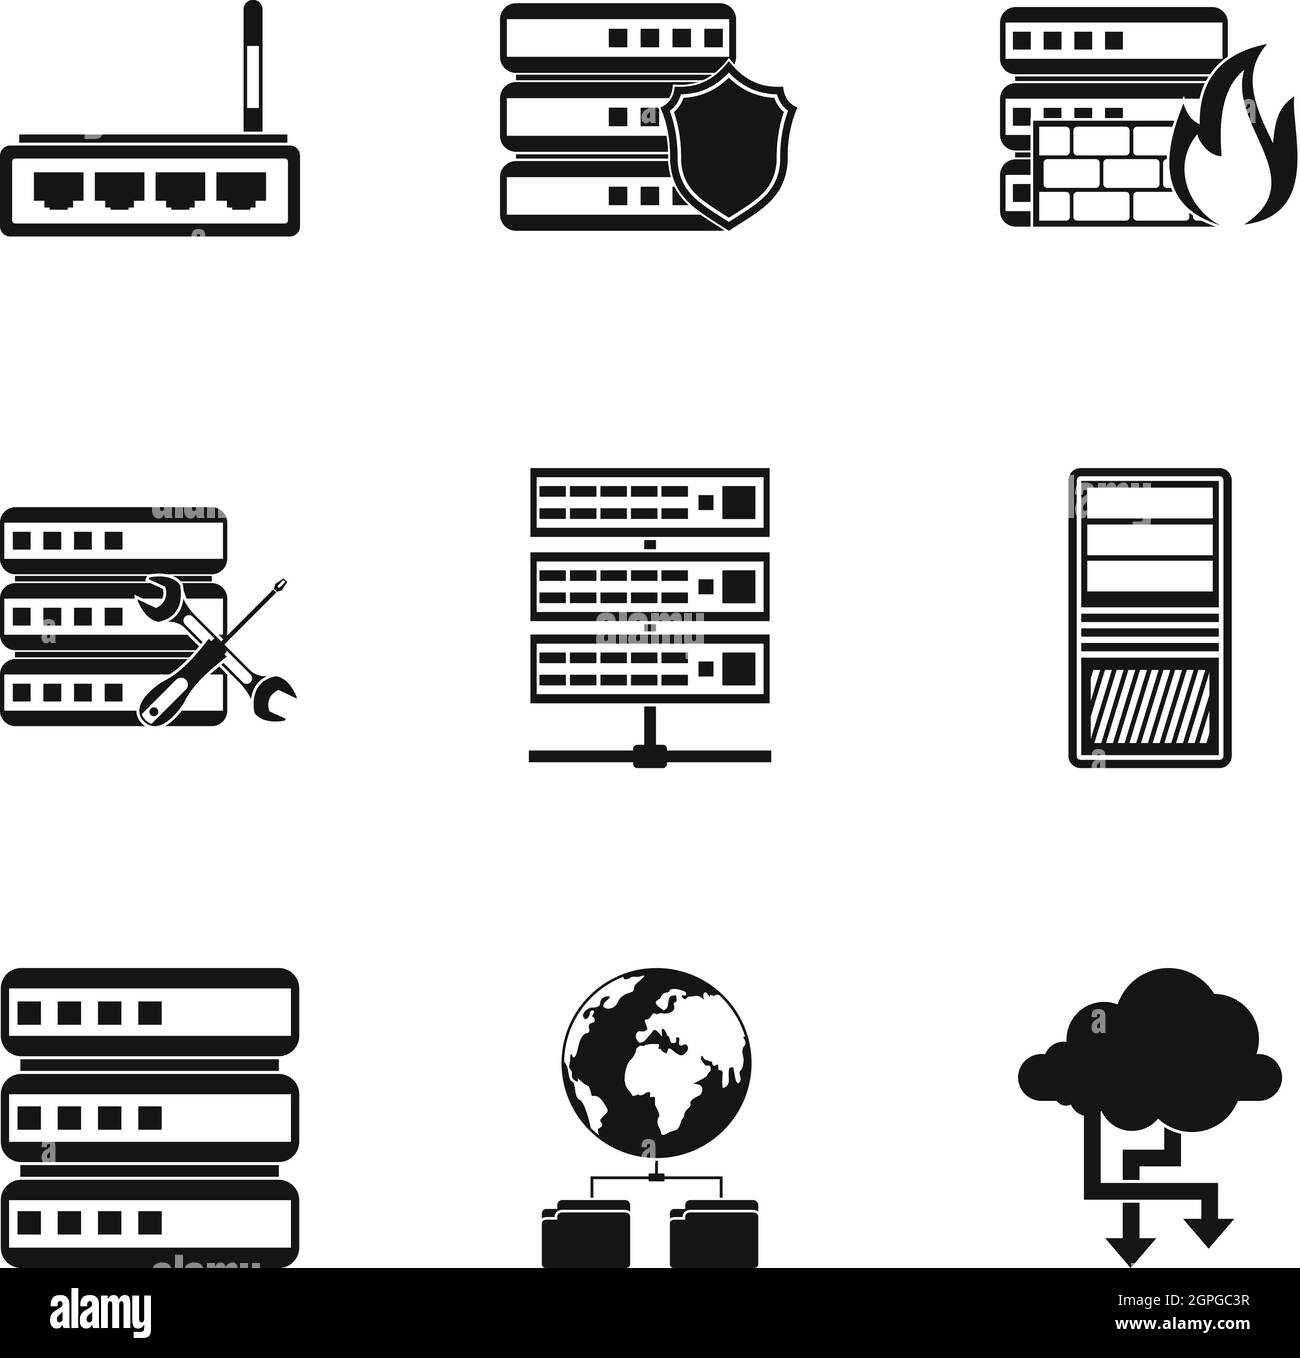 Computer icons set, le style simple Illustration de Vecteur